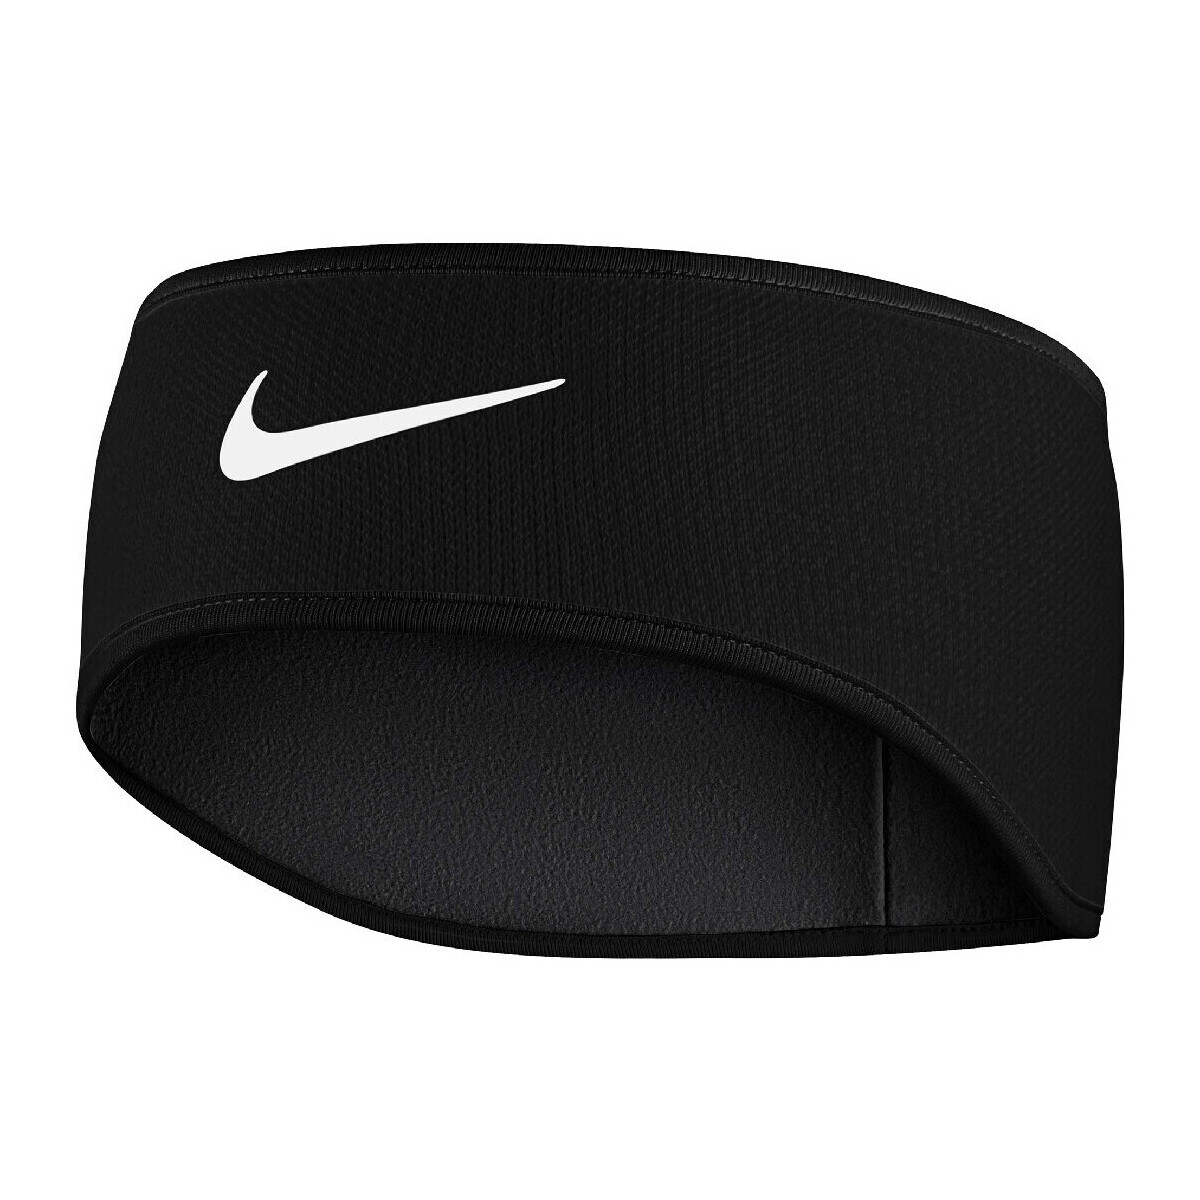 Accesorios Complemento para deporte Nike N0003530091 Negro